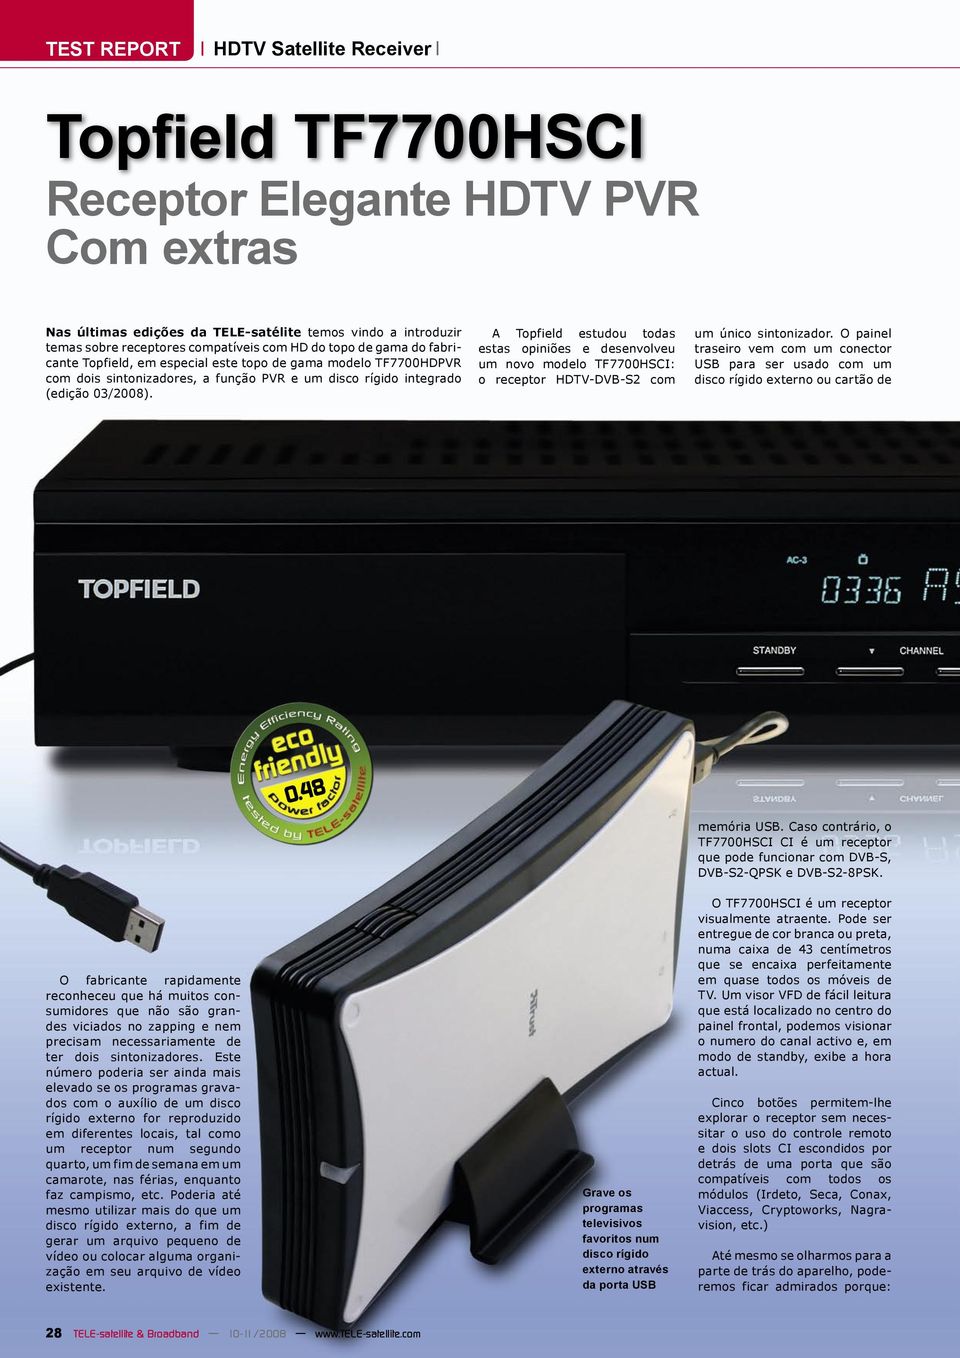 A Topfield estudou todas estas opiniões e desenvolveu um vo modelo TF7700HSCI: o receptor HDTV-DVB-S2 com um único sintonizador.